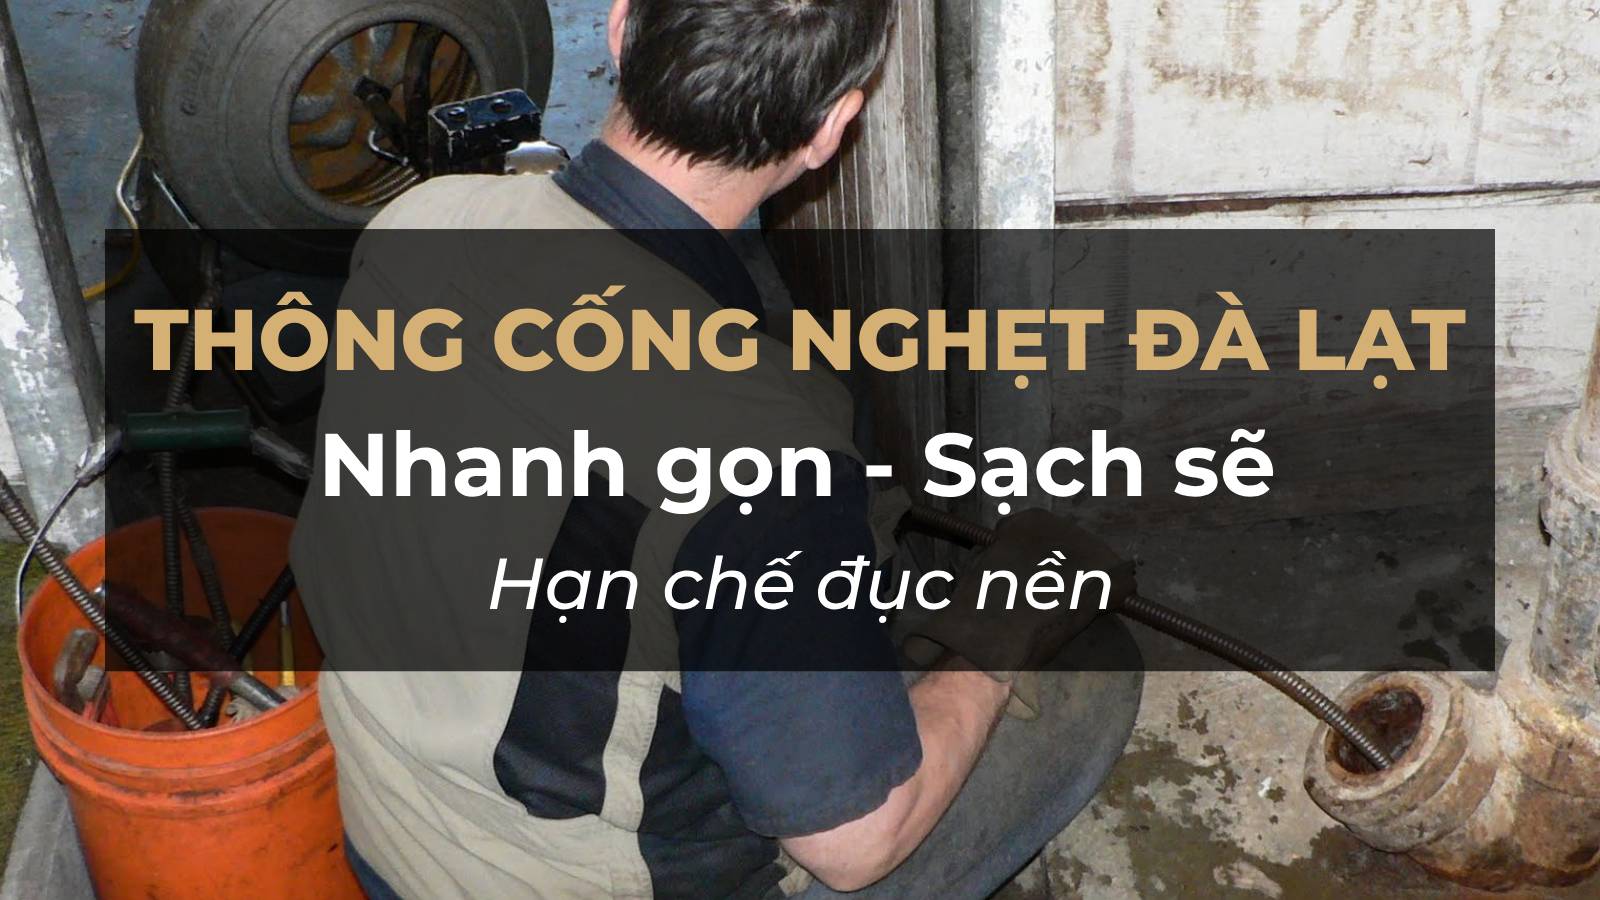 thong-cong-nghet-da-lat-Cong-ty-Nguyen-Phu